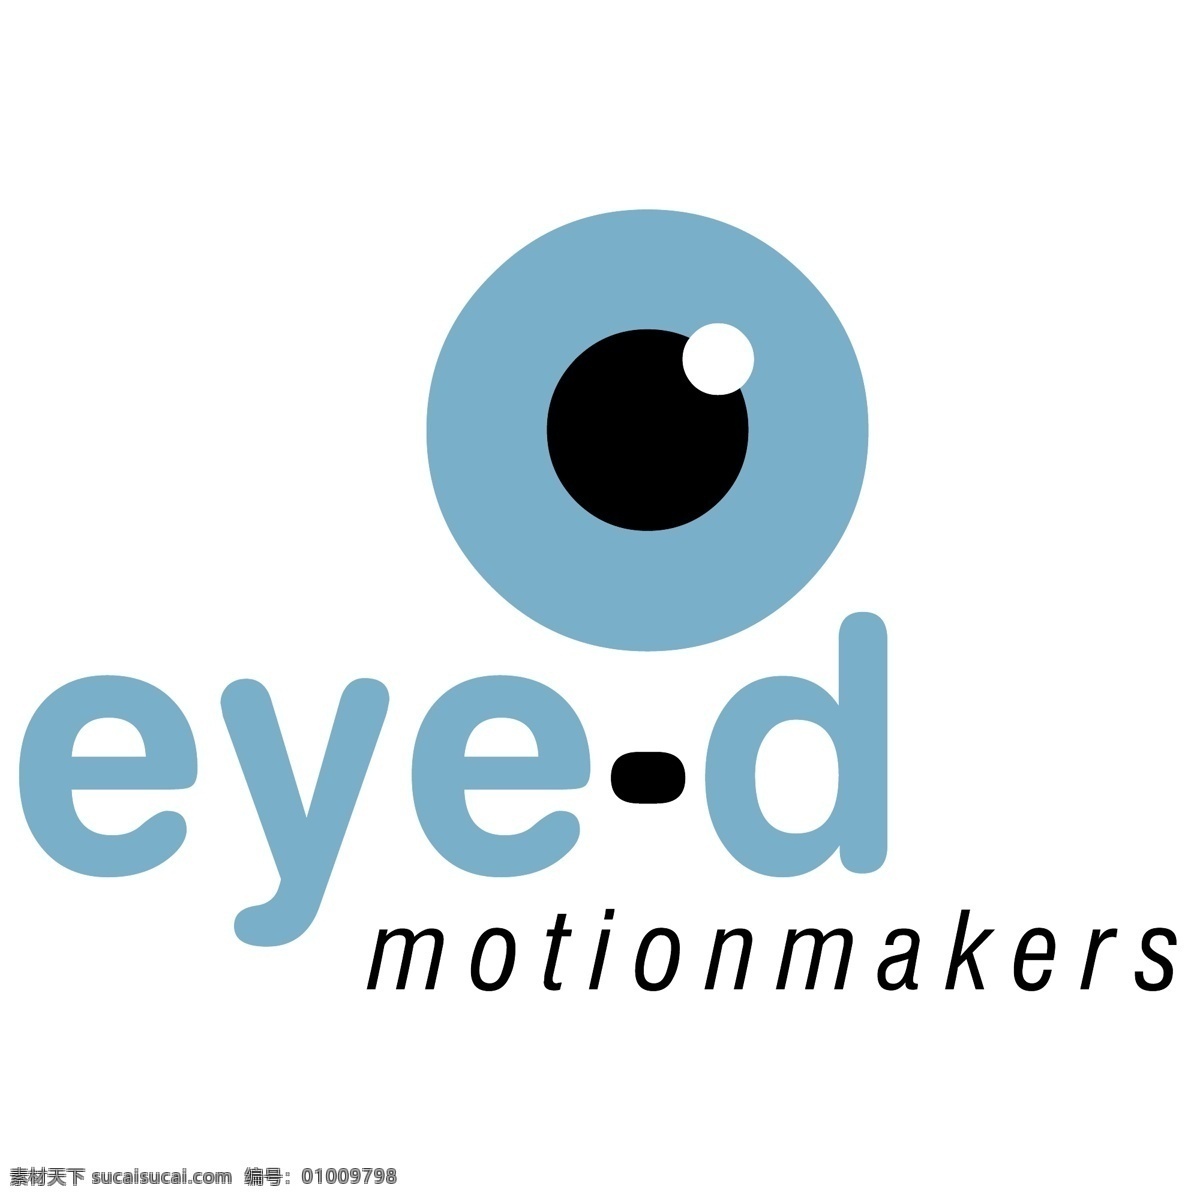 眼睛 motionmakers 免费 矢量图 眼睛在向量 向量 矢量 图形 建筑家居